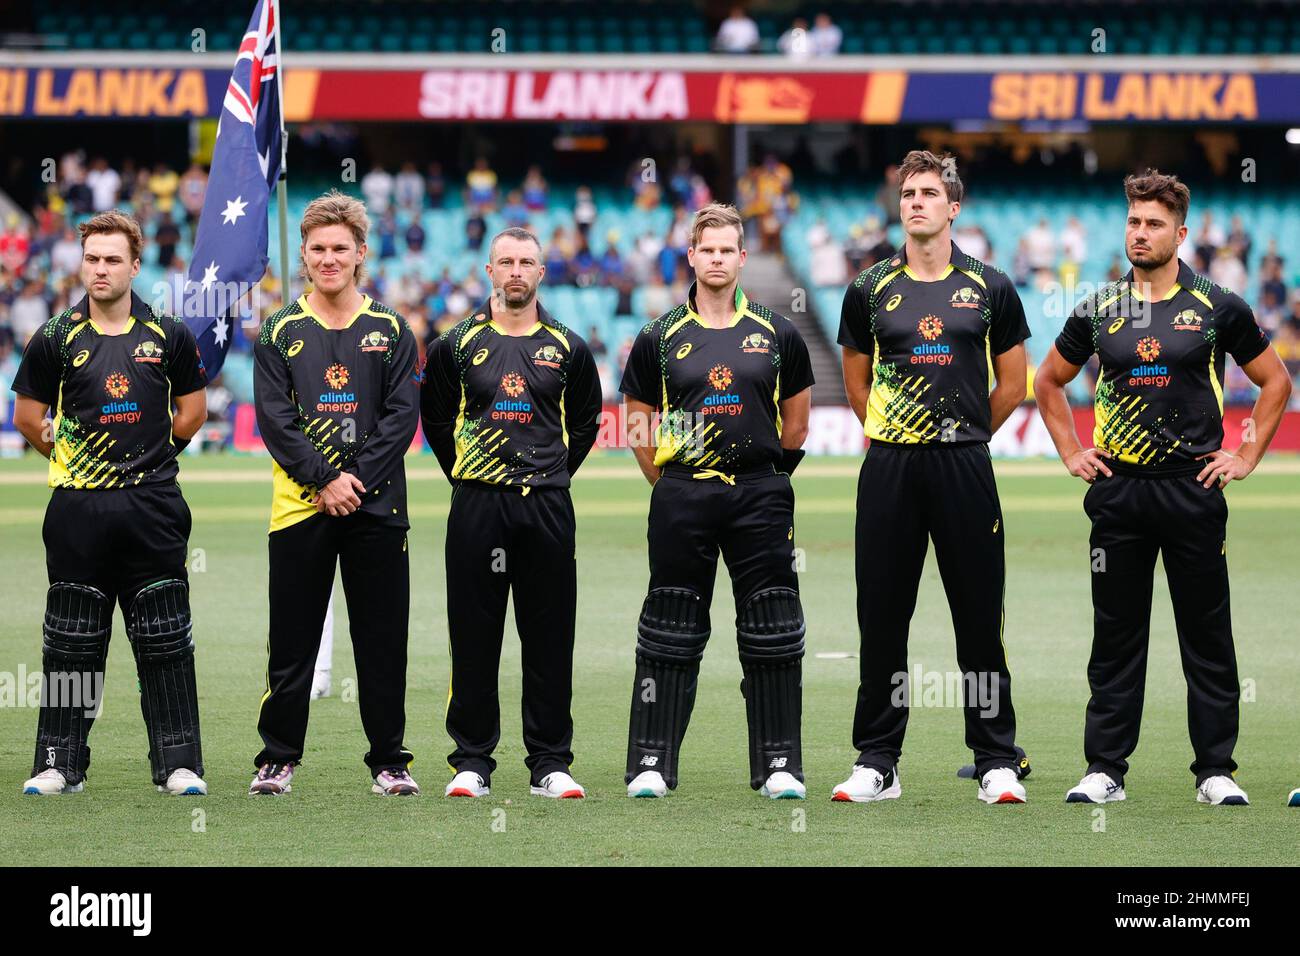 Photos - Australia T20 Cricket Team Preview vs Sri Lanka 2022